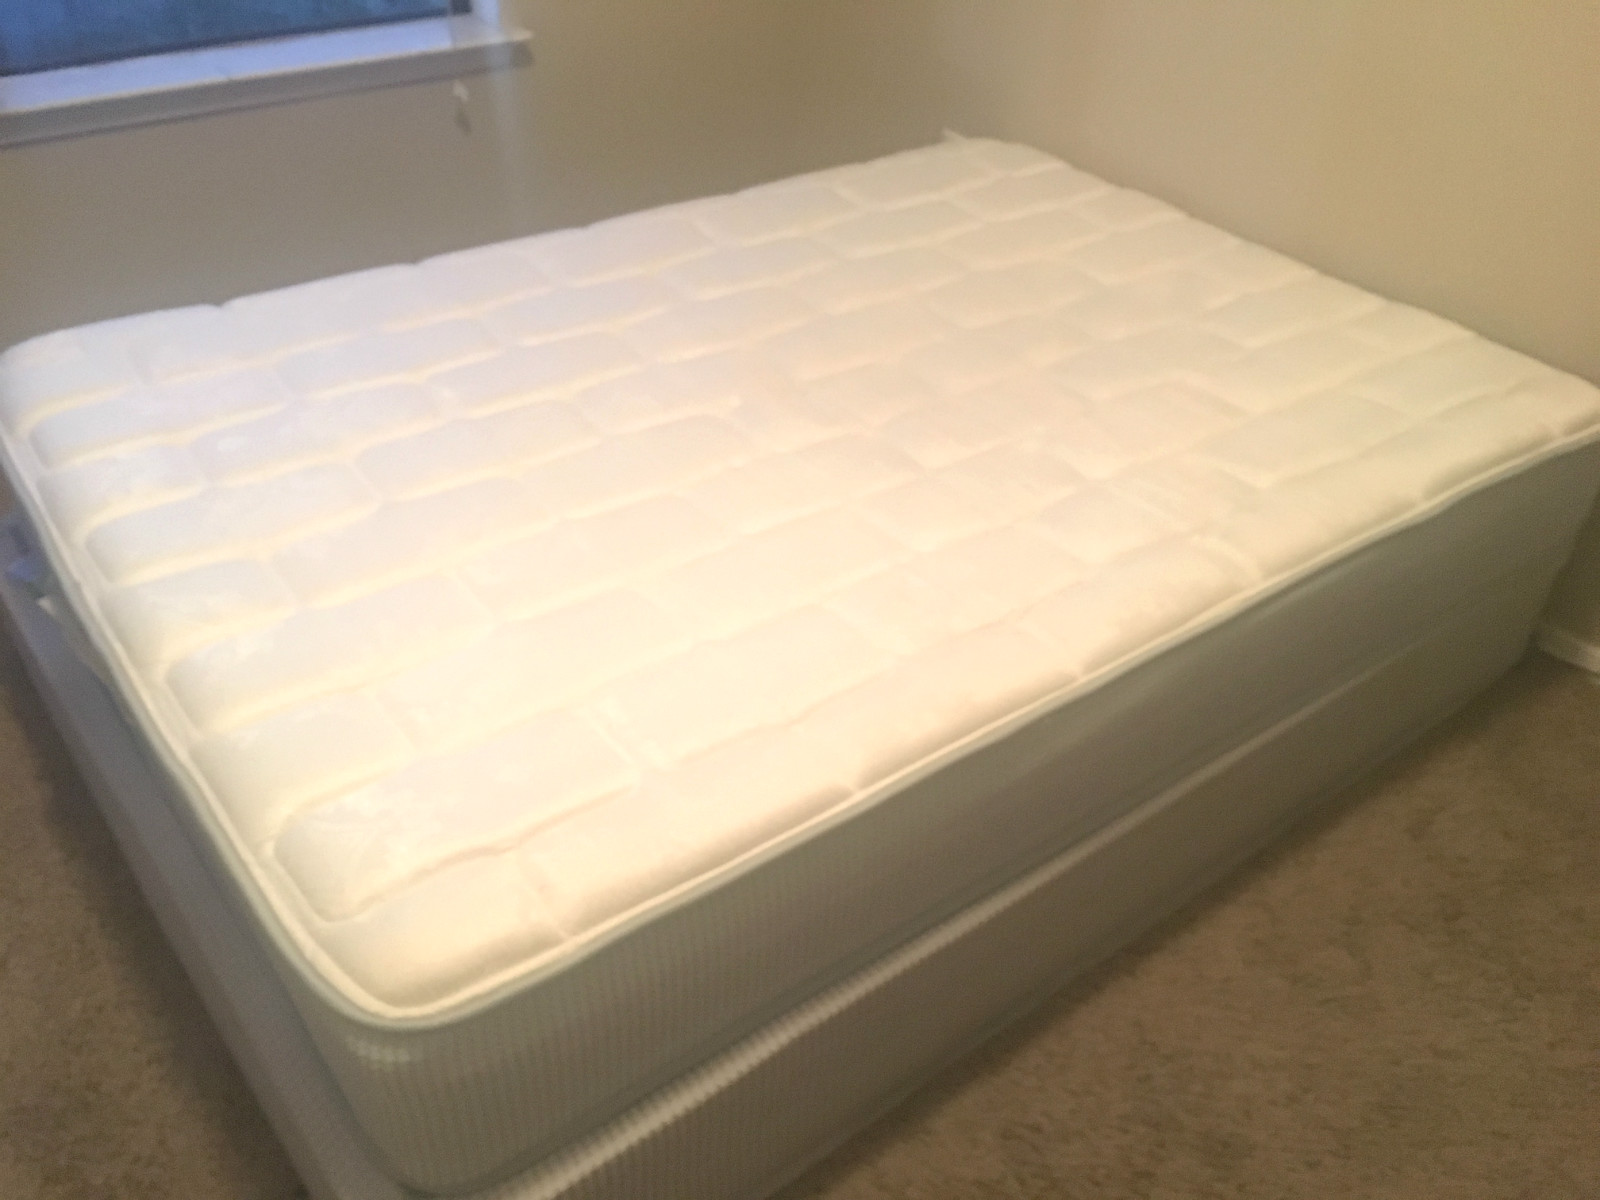 mattress1.jpg